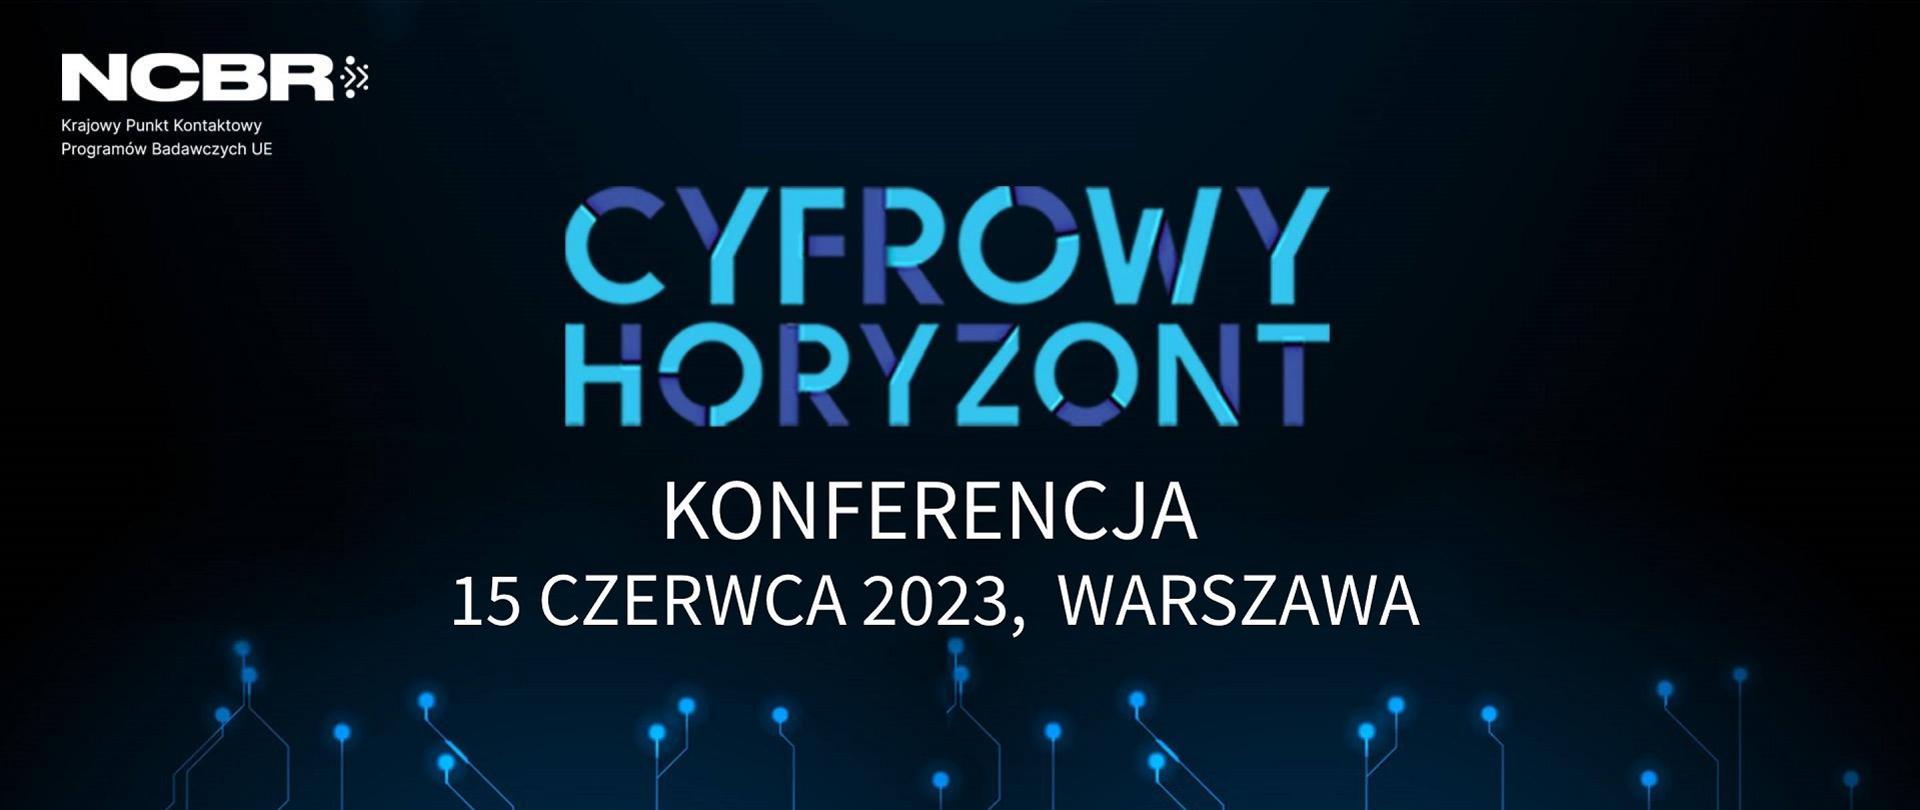 Konferencja CYFROWY HORYZONT
W imieniu Działu Krajowego Punktu Kontaktowego Programów Badawczych UE/NCBR zapraszamy do udziału w Konferencji CYFROWY HORYZONT.
Wydarzenie odbędzie się w dniu 15 czerwca 2023 r., w Hotelu Marriott, w Warszawie.
